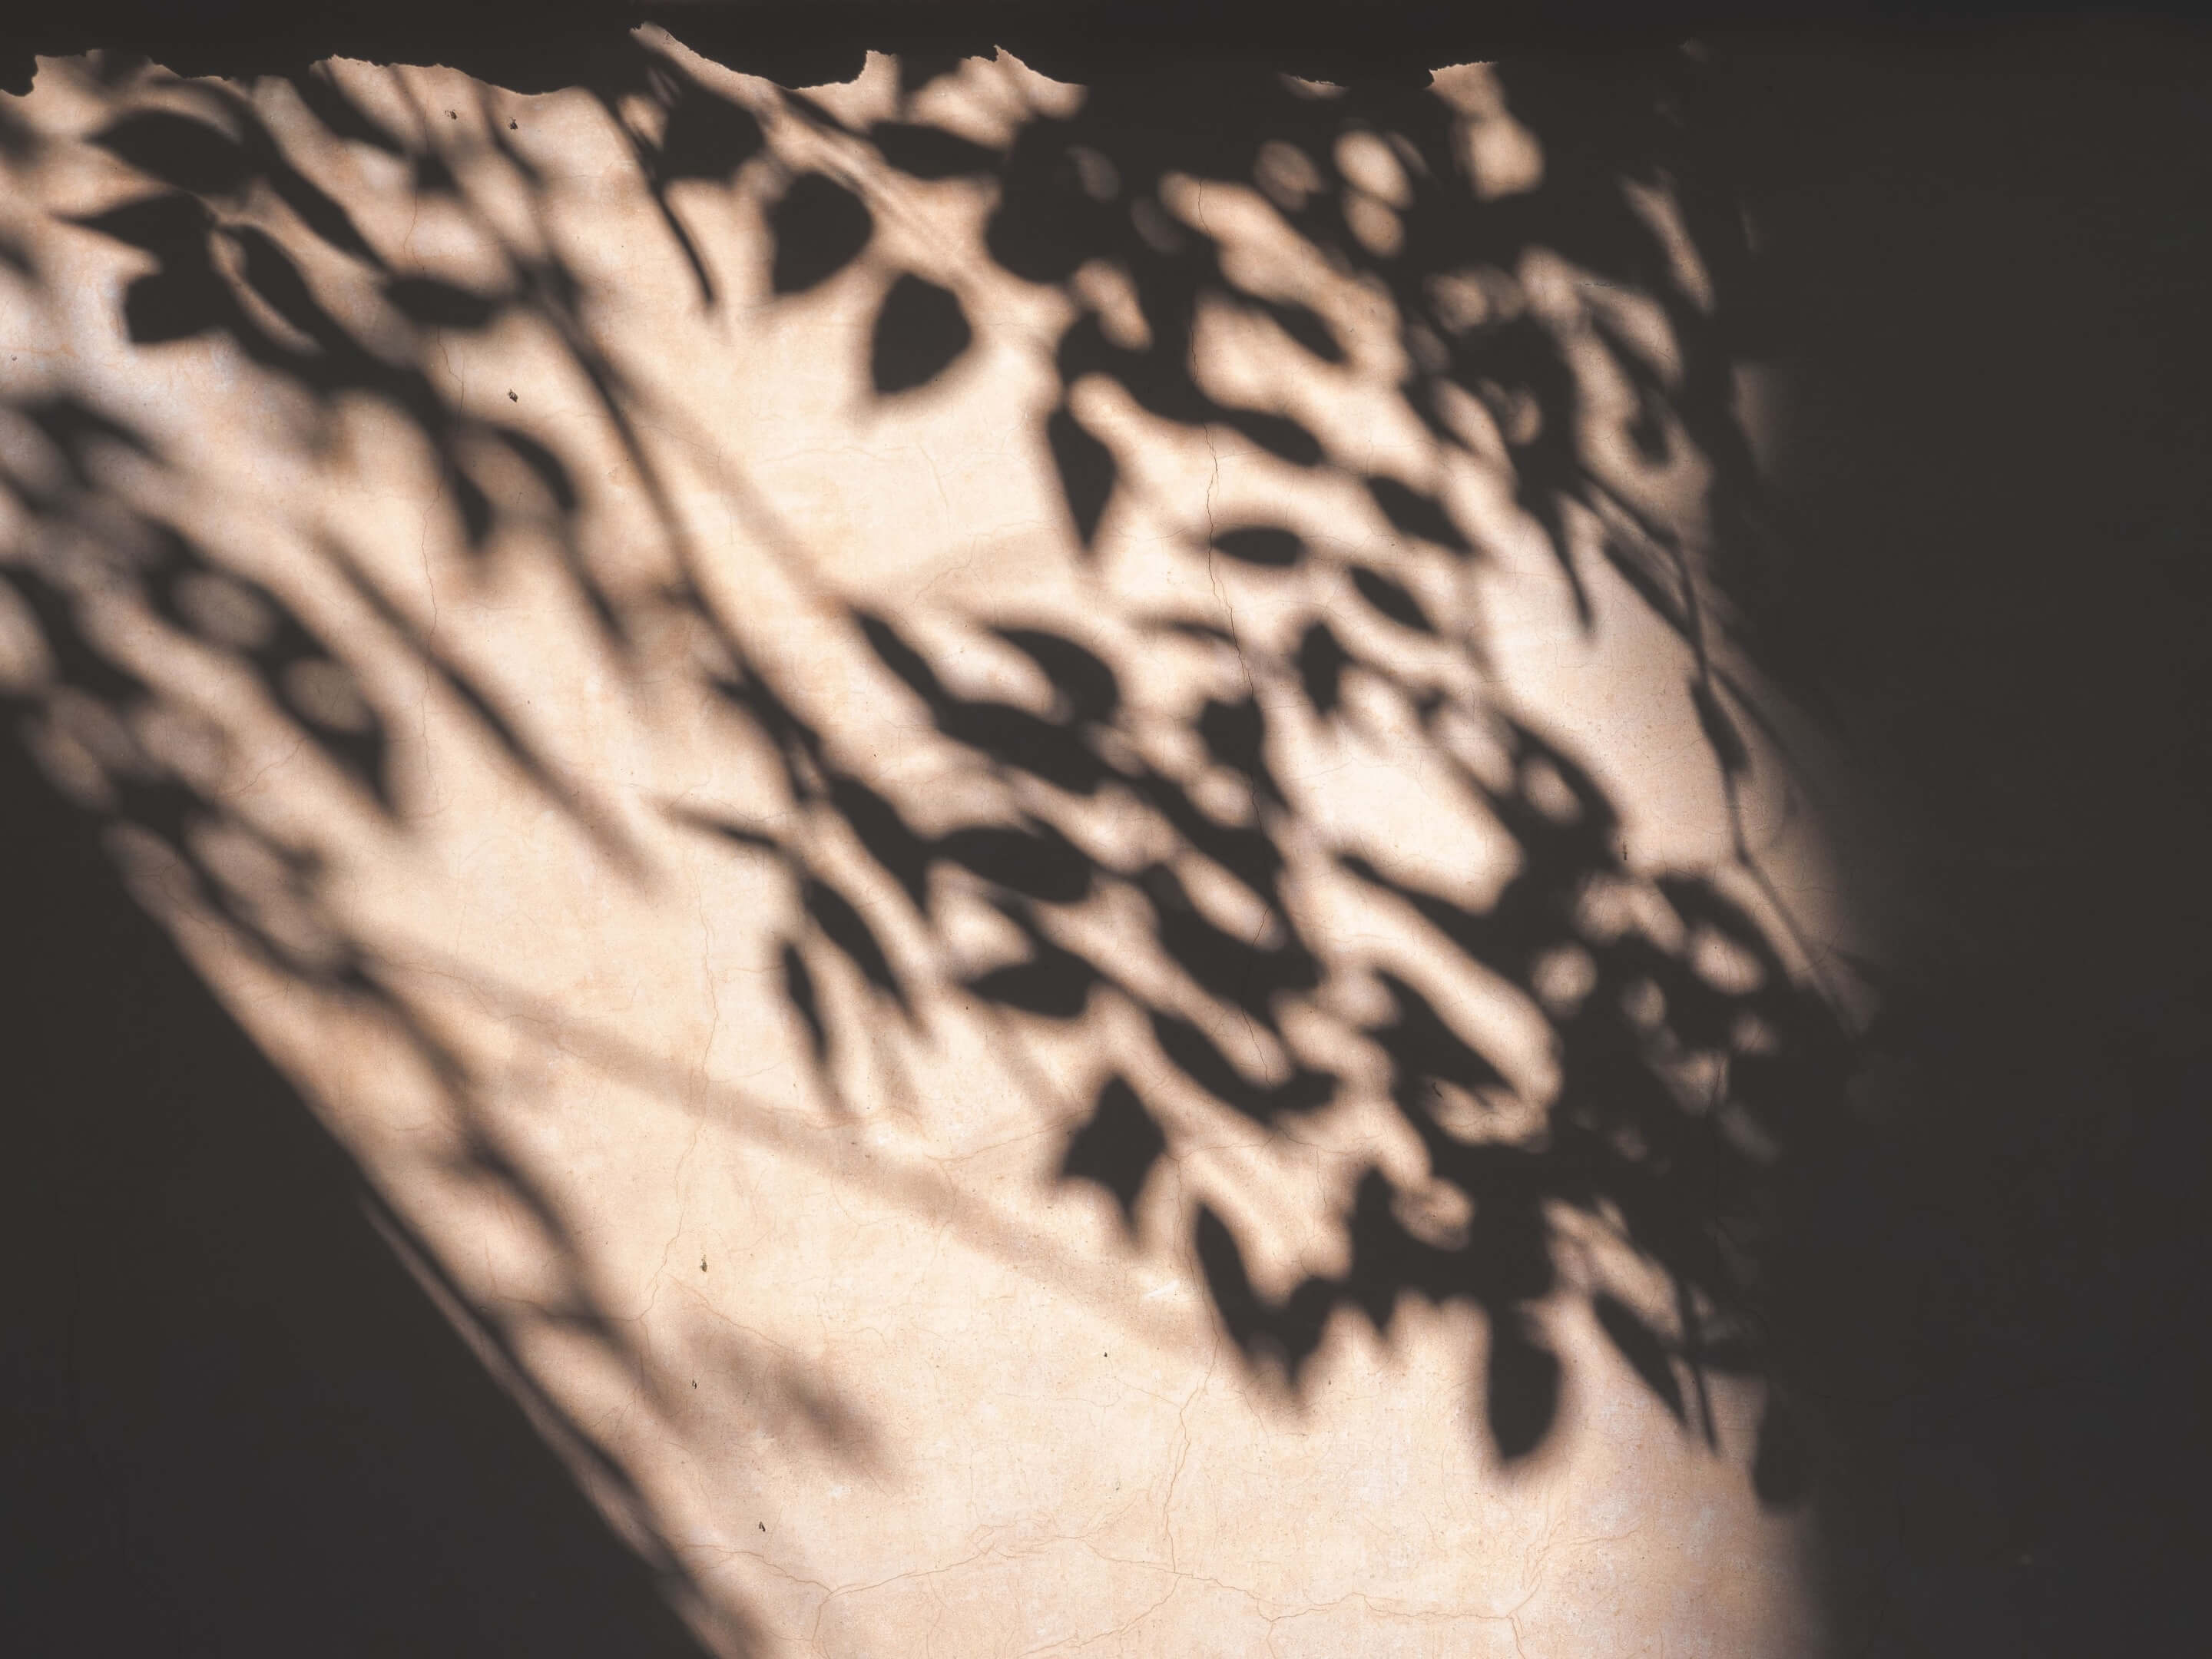 Schatten von Blättern, die ein ruhiges Muster auf einer Innenwand erzeugen